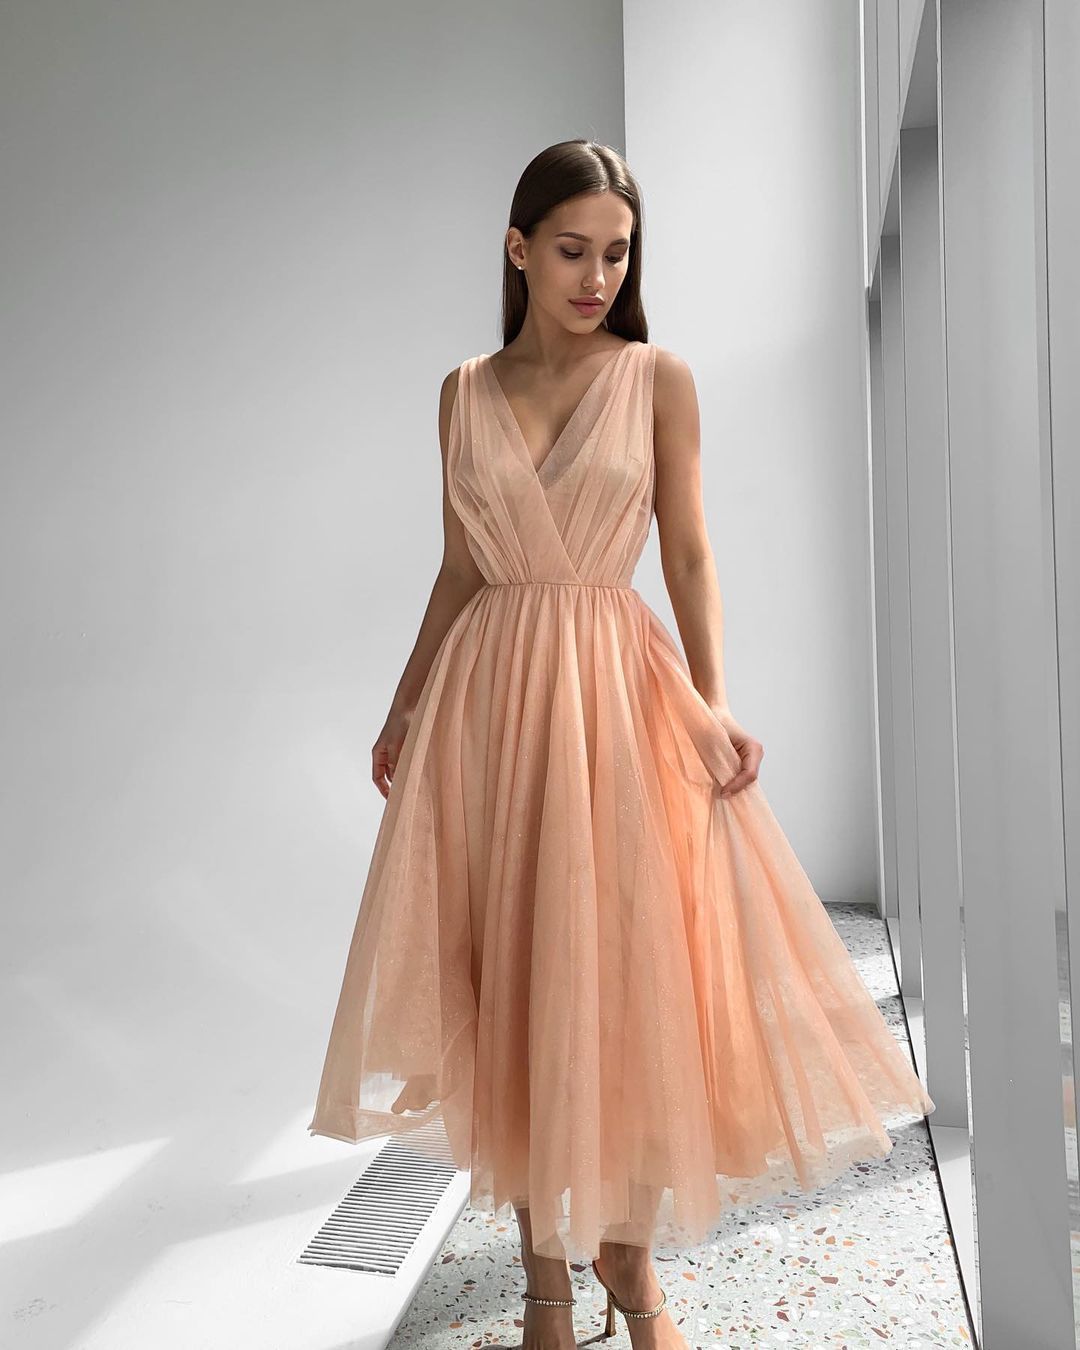 Пышные платья: модные фасоны и модели